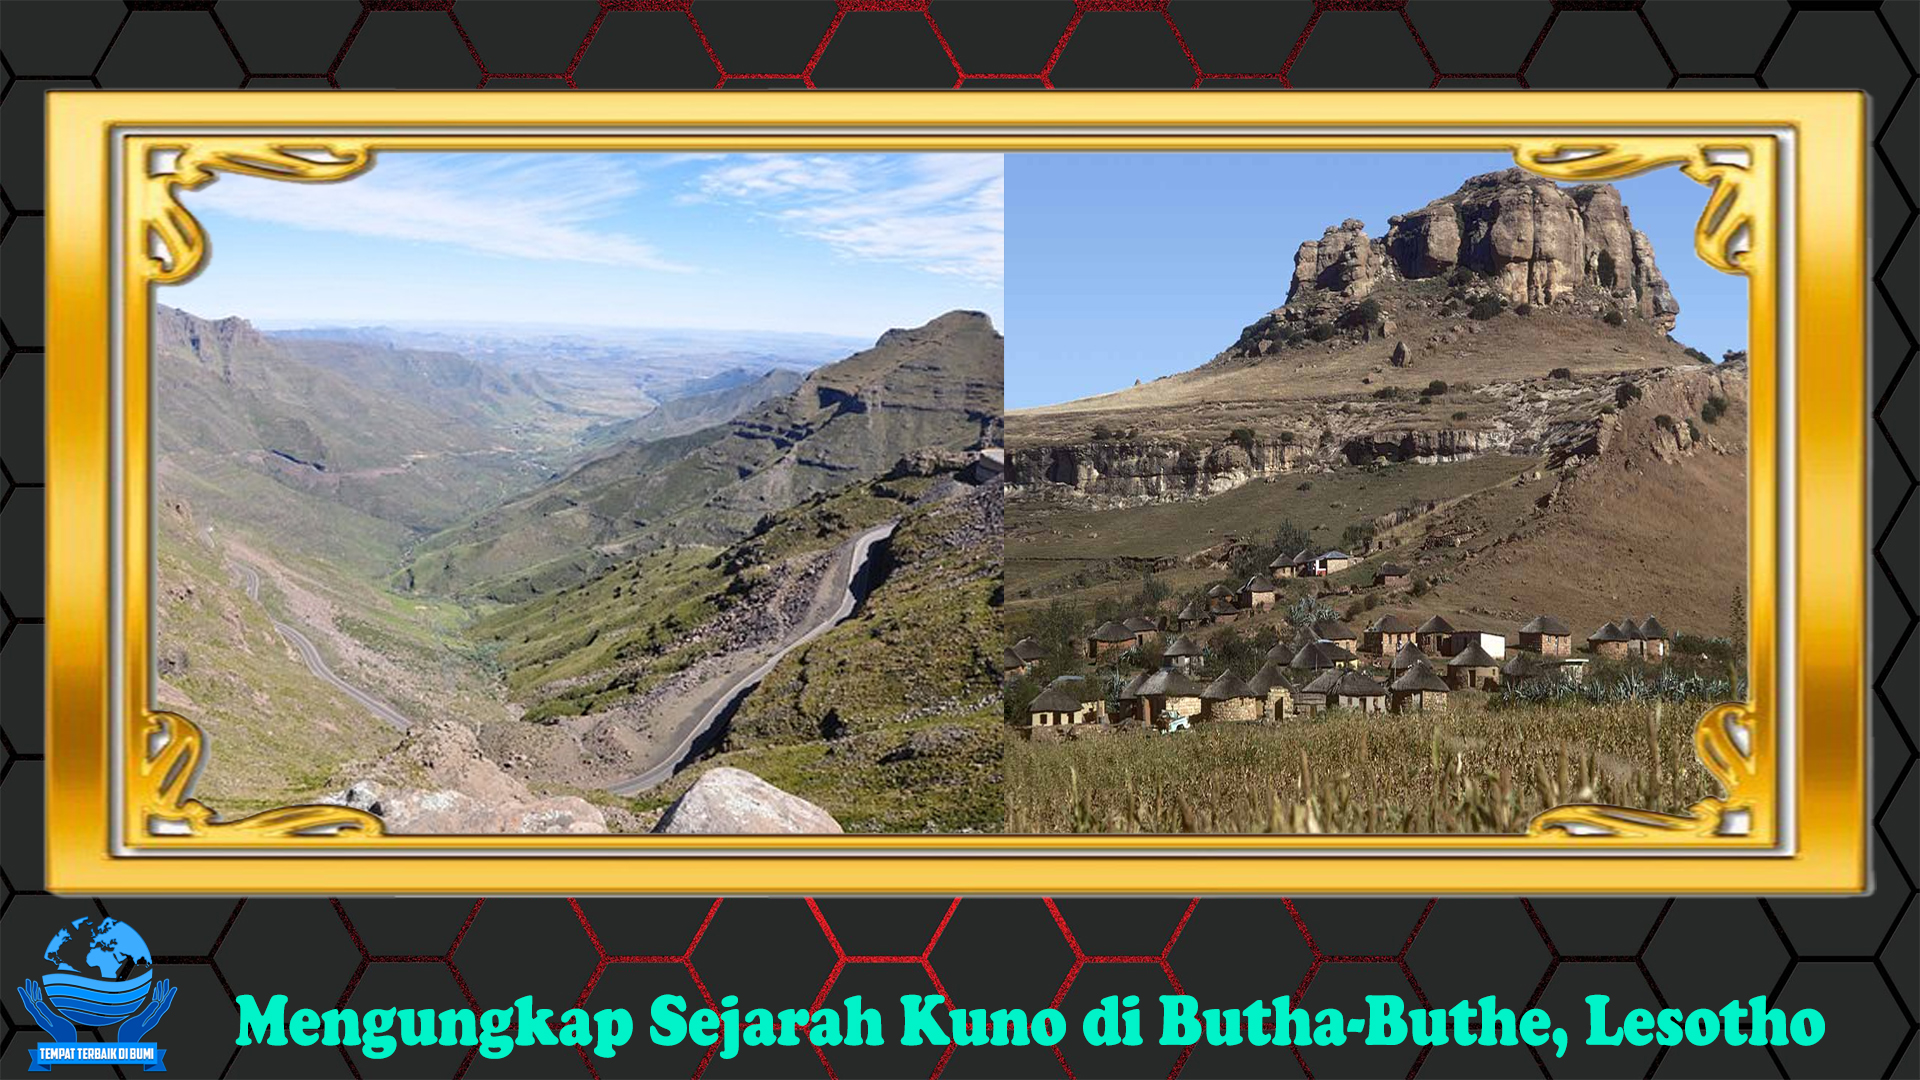 Mengungkap Sejarah Kuno di Butha-Buthe, Lesotho